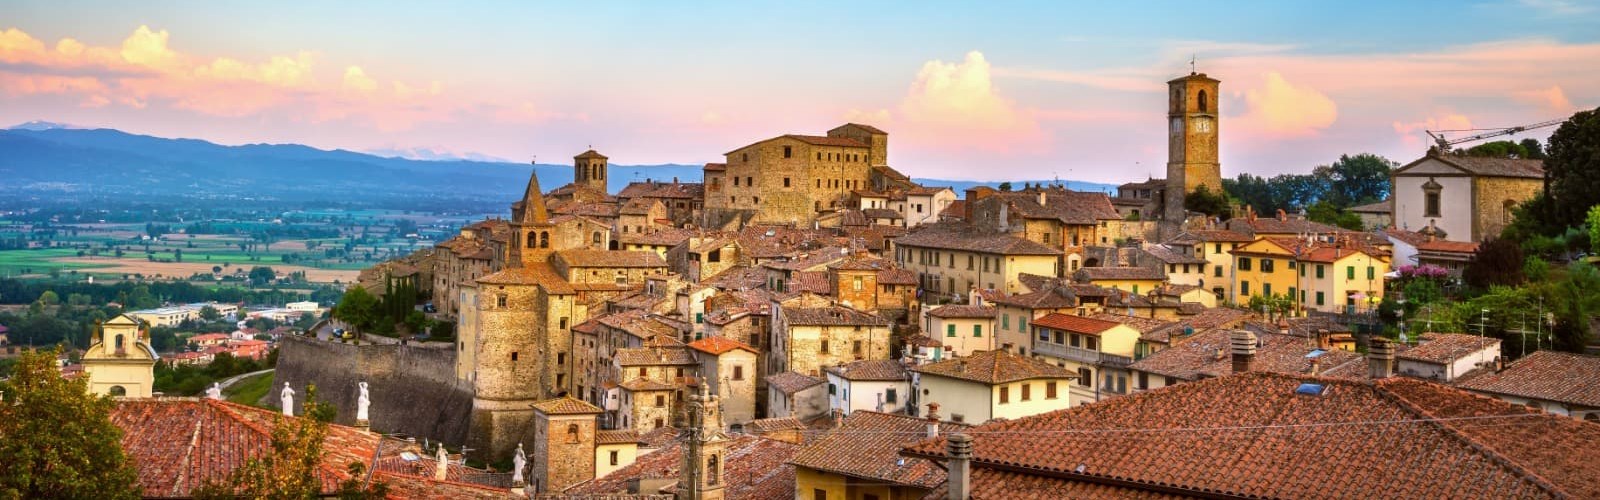 smukke byer i Toscana